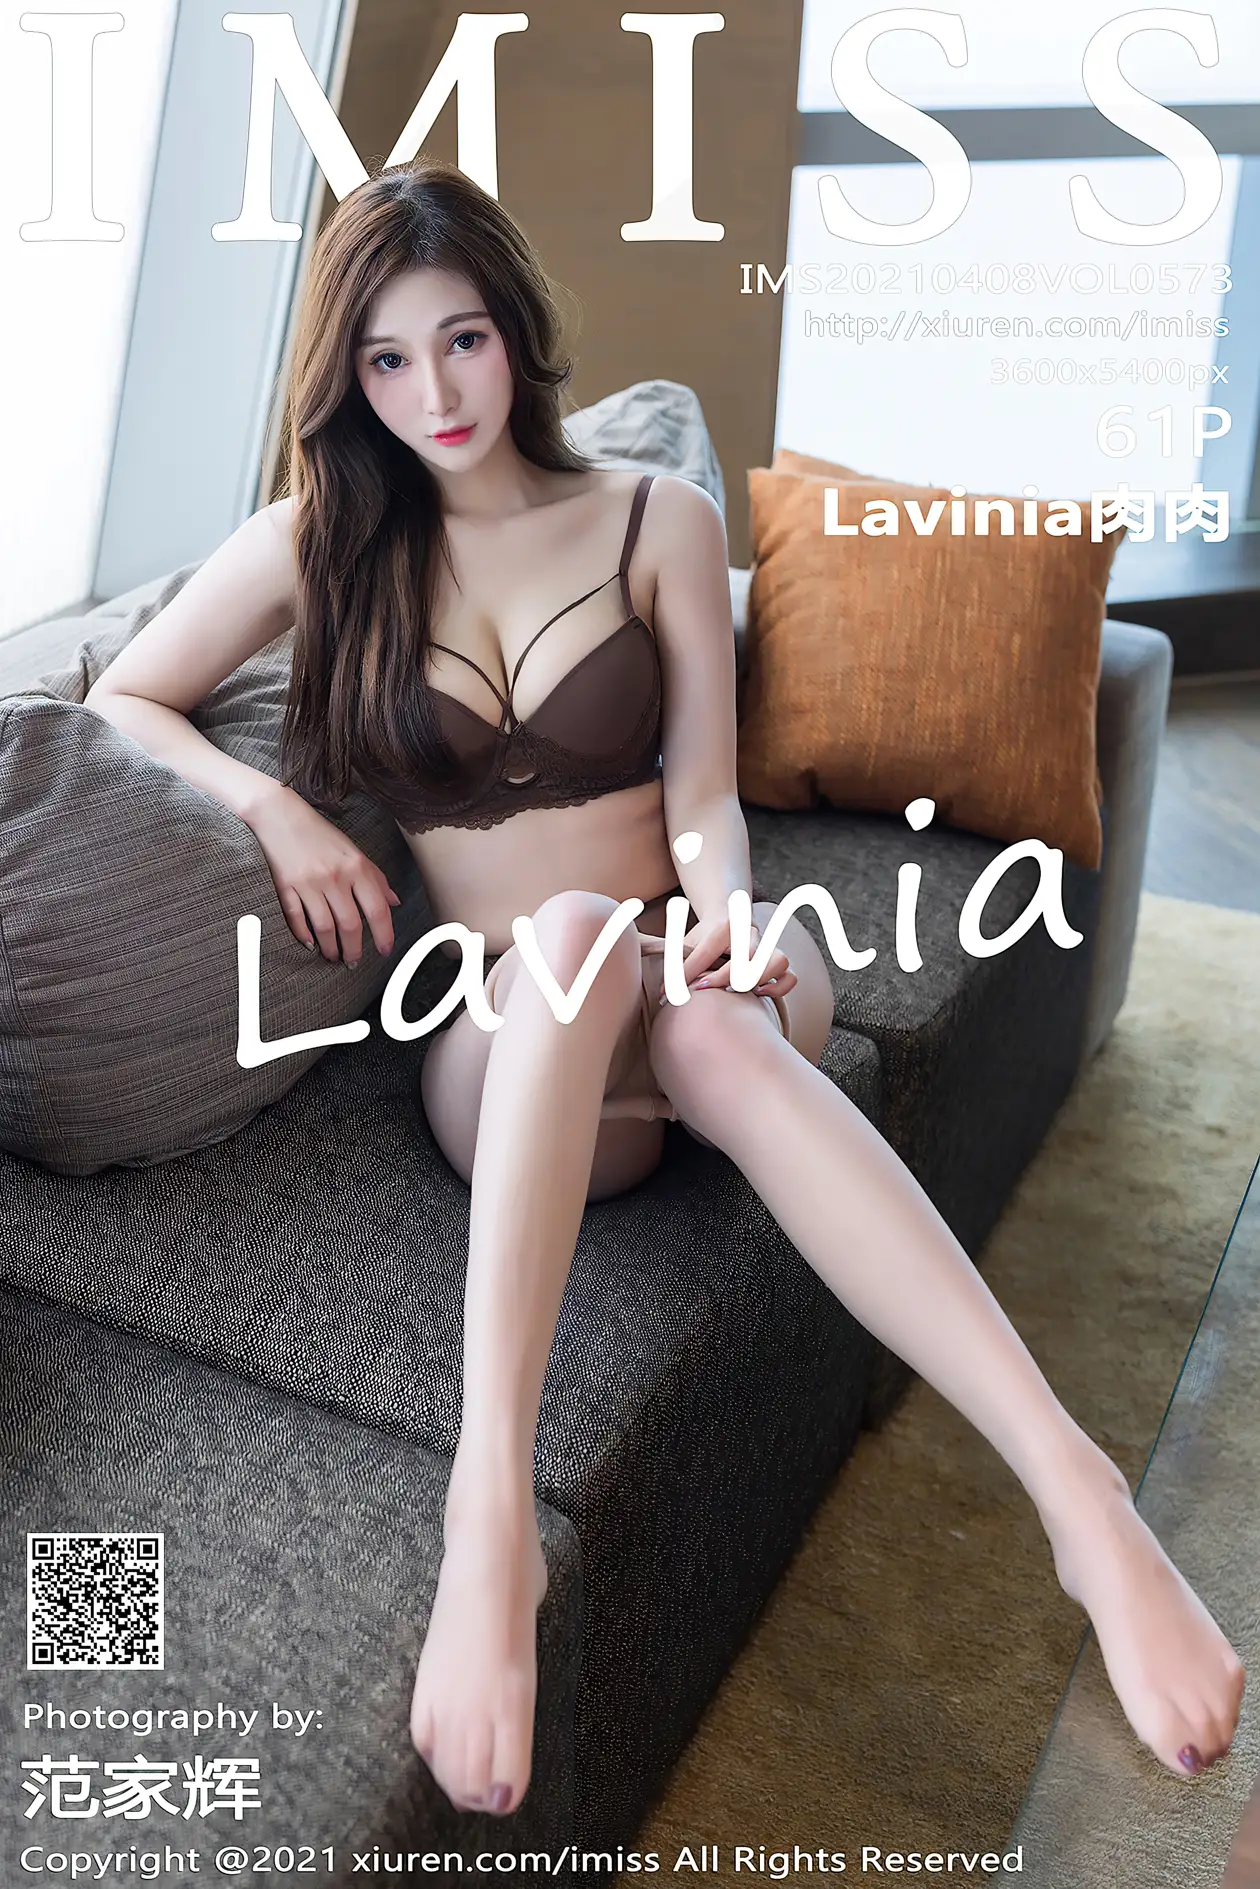 [爱蜜社] 2021.04.08 VOL.573 –Lavinia肉肉 [62P]-美女图册